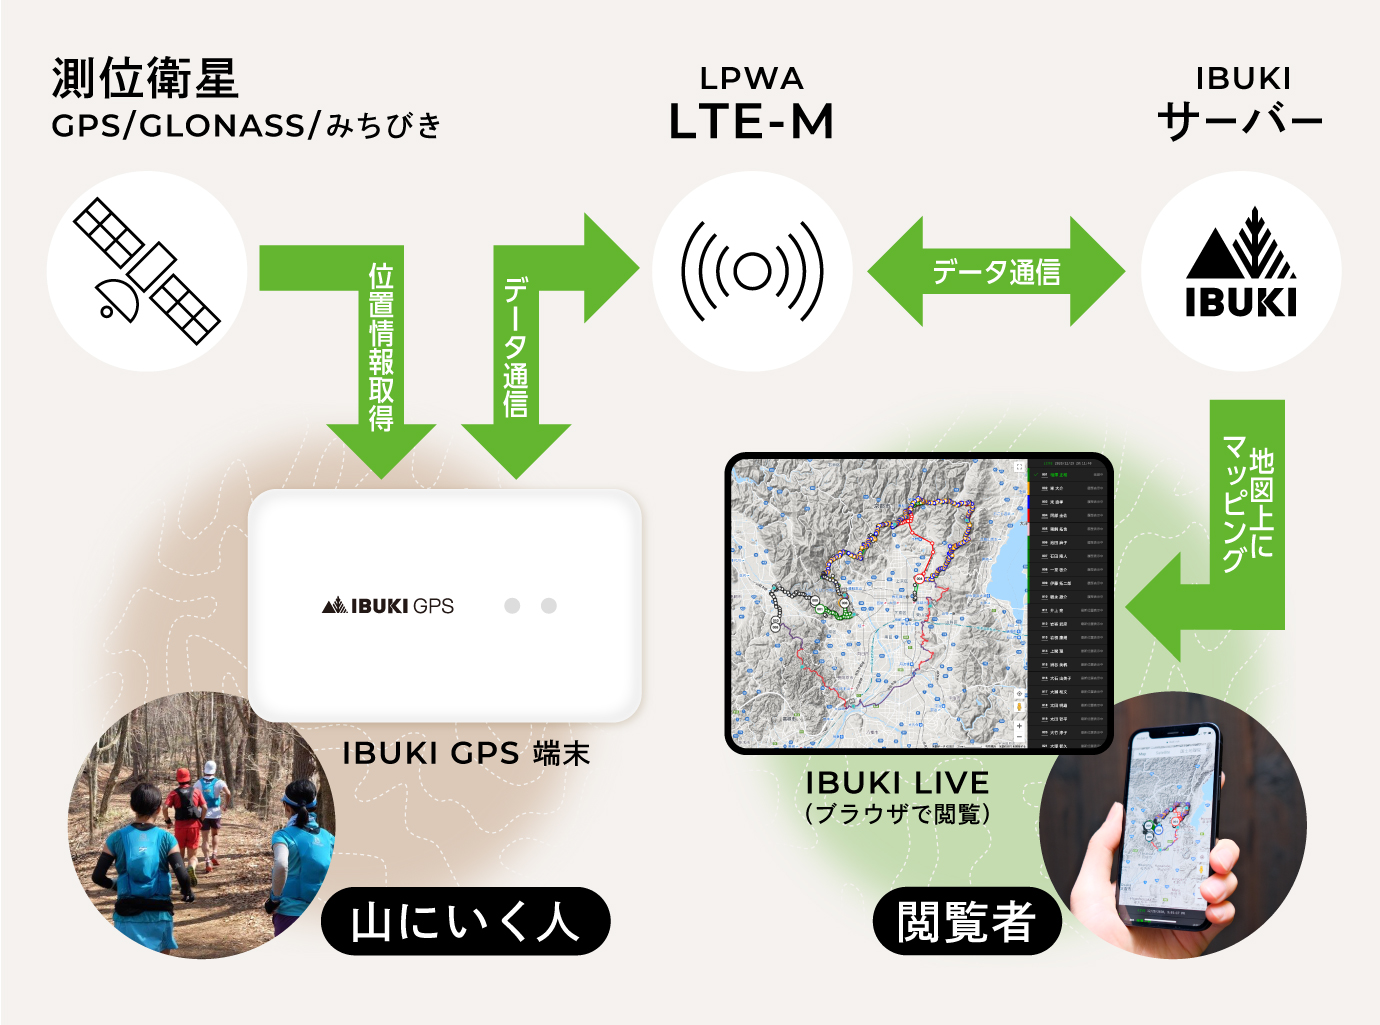 IBUKI GPSを用いて測位衛星から位置情報を取得し、LTE-M通信でIBUKIサーバーにデータを通信することで位置情報をブラウザで確認できます